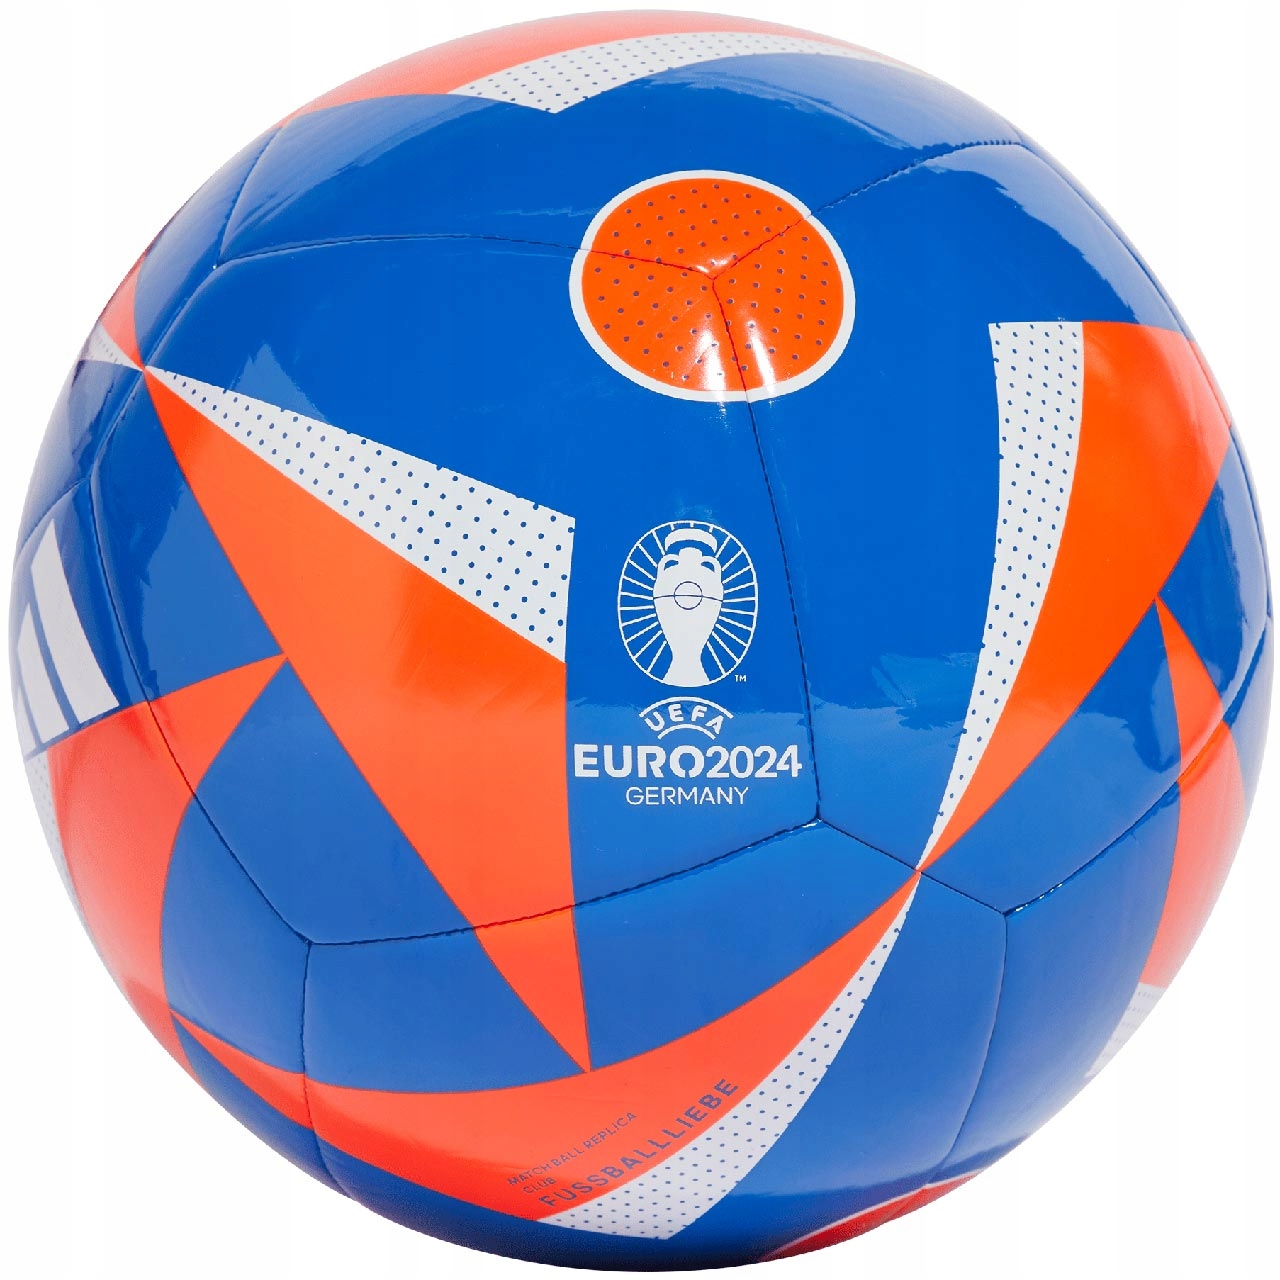 Futbal Adidas Tréning EURO 2024 Nemecko FUSSBALLLIEBE